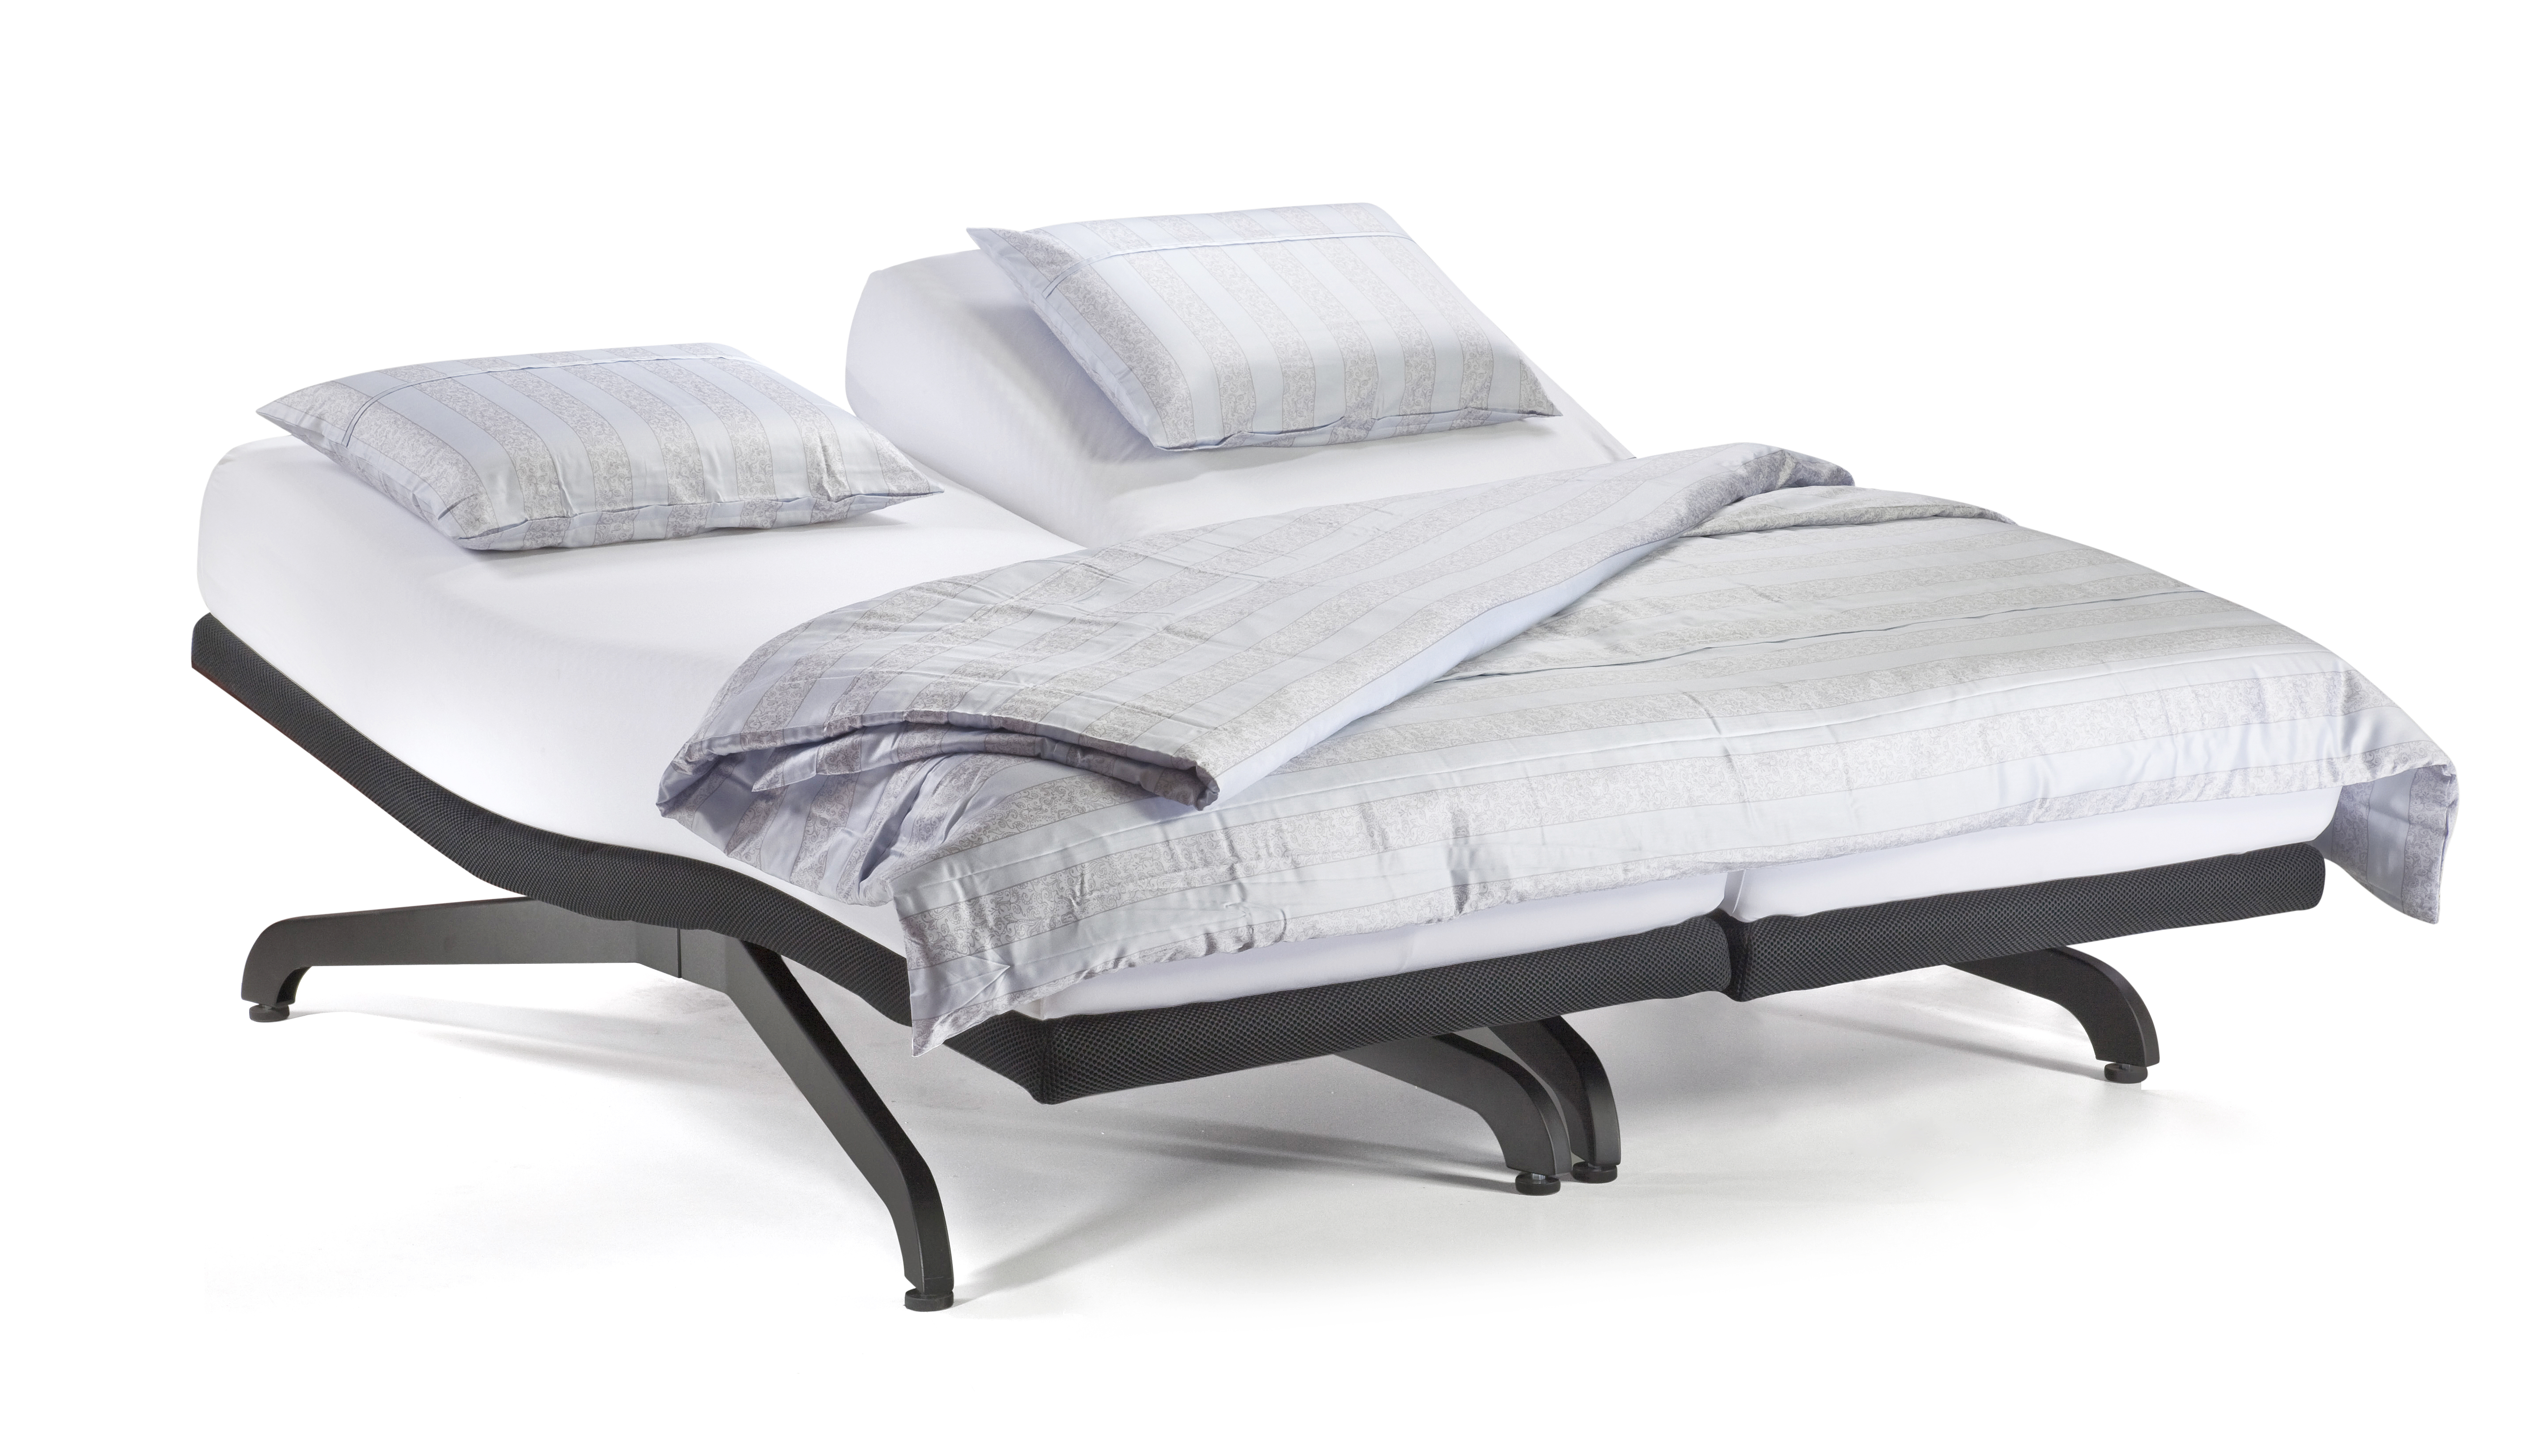 Luxus ágy Perfect 4U NOVETEX - Ágyban a legjobb!